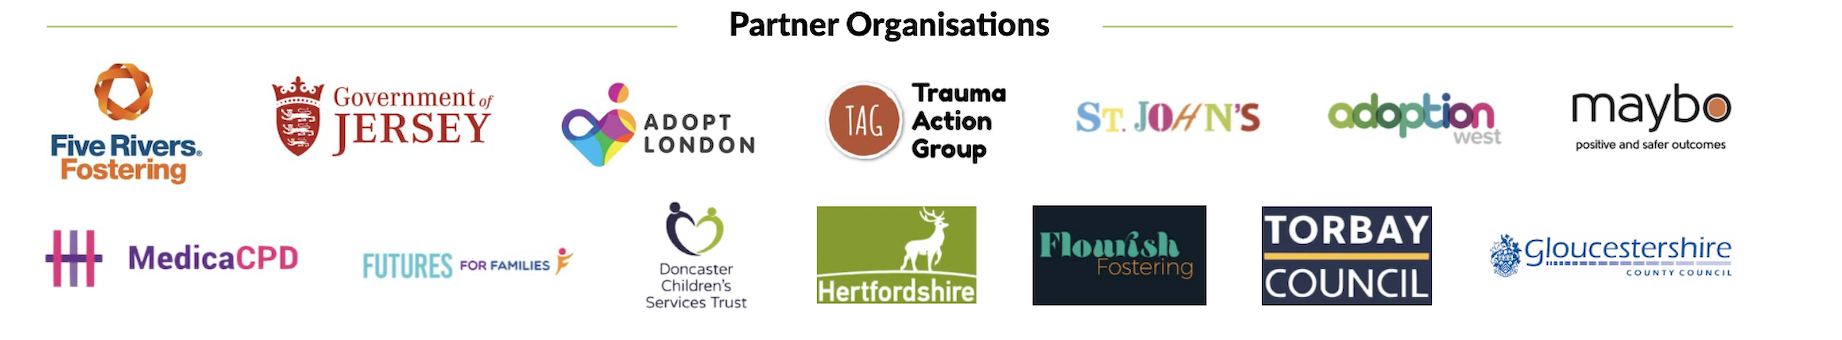 Partner organisations logos